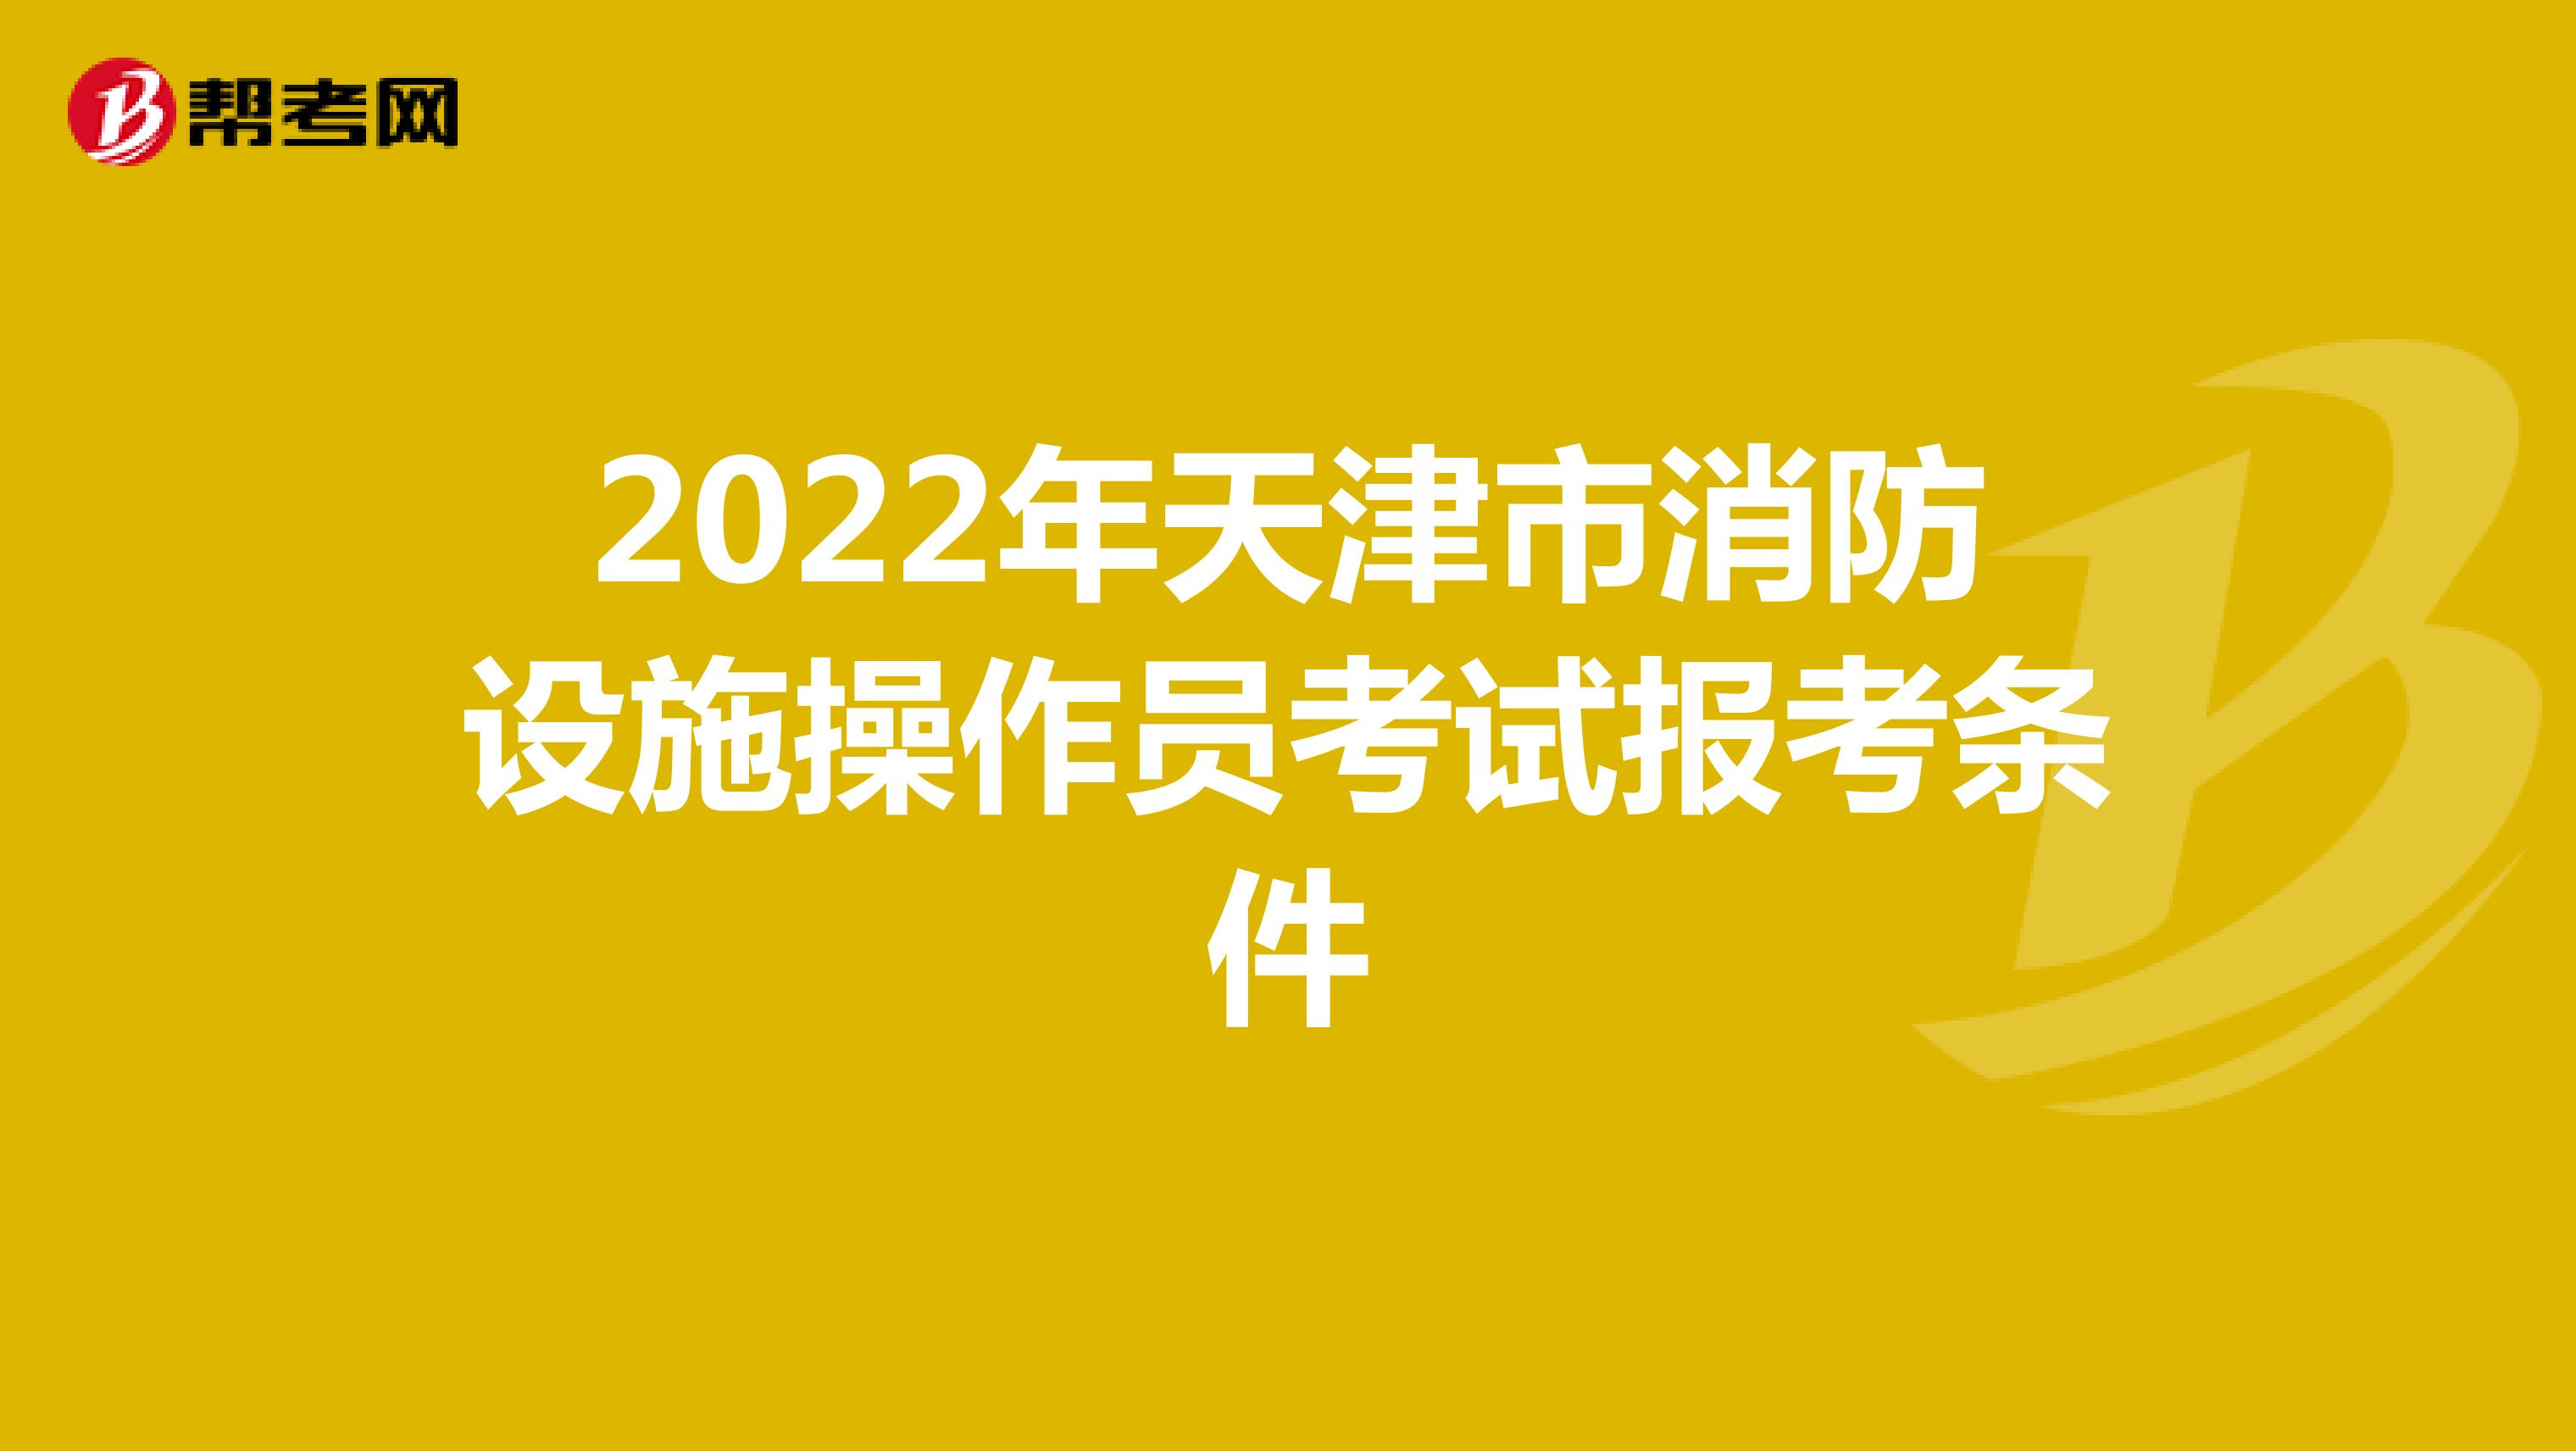 2022年天津市消防设施操作员考试报考条件